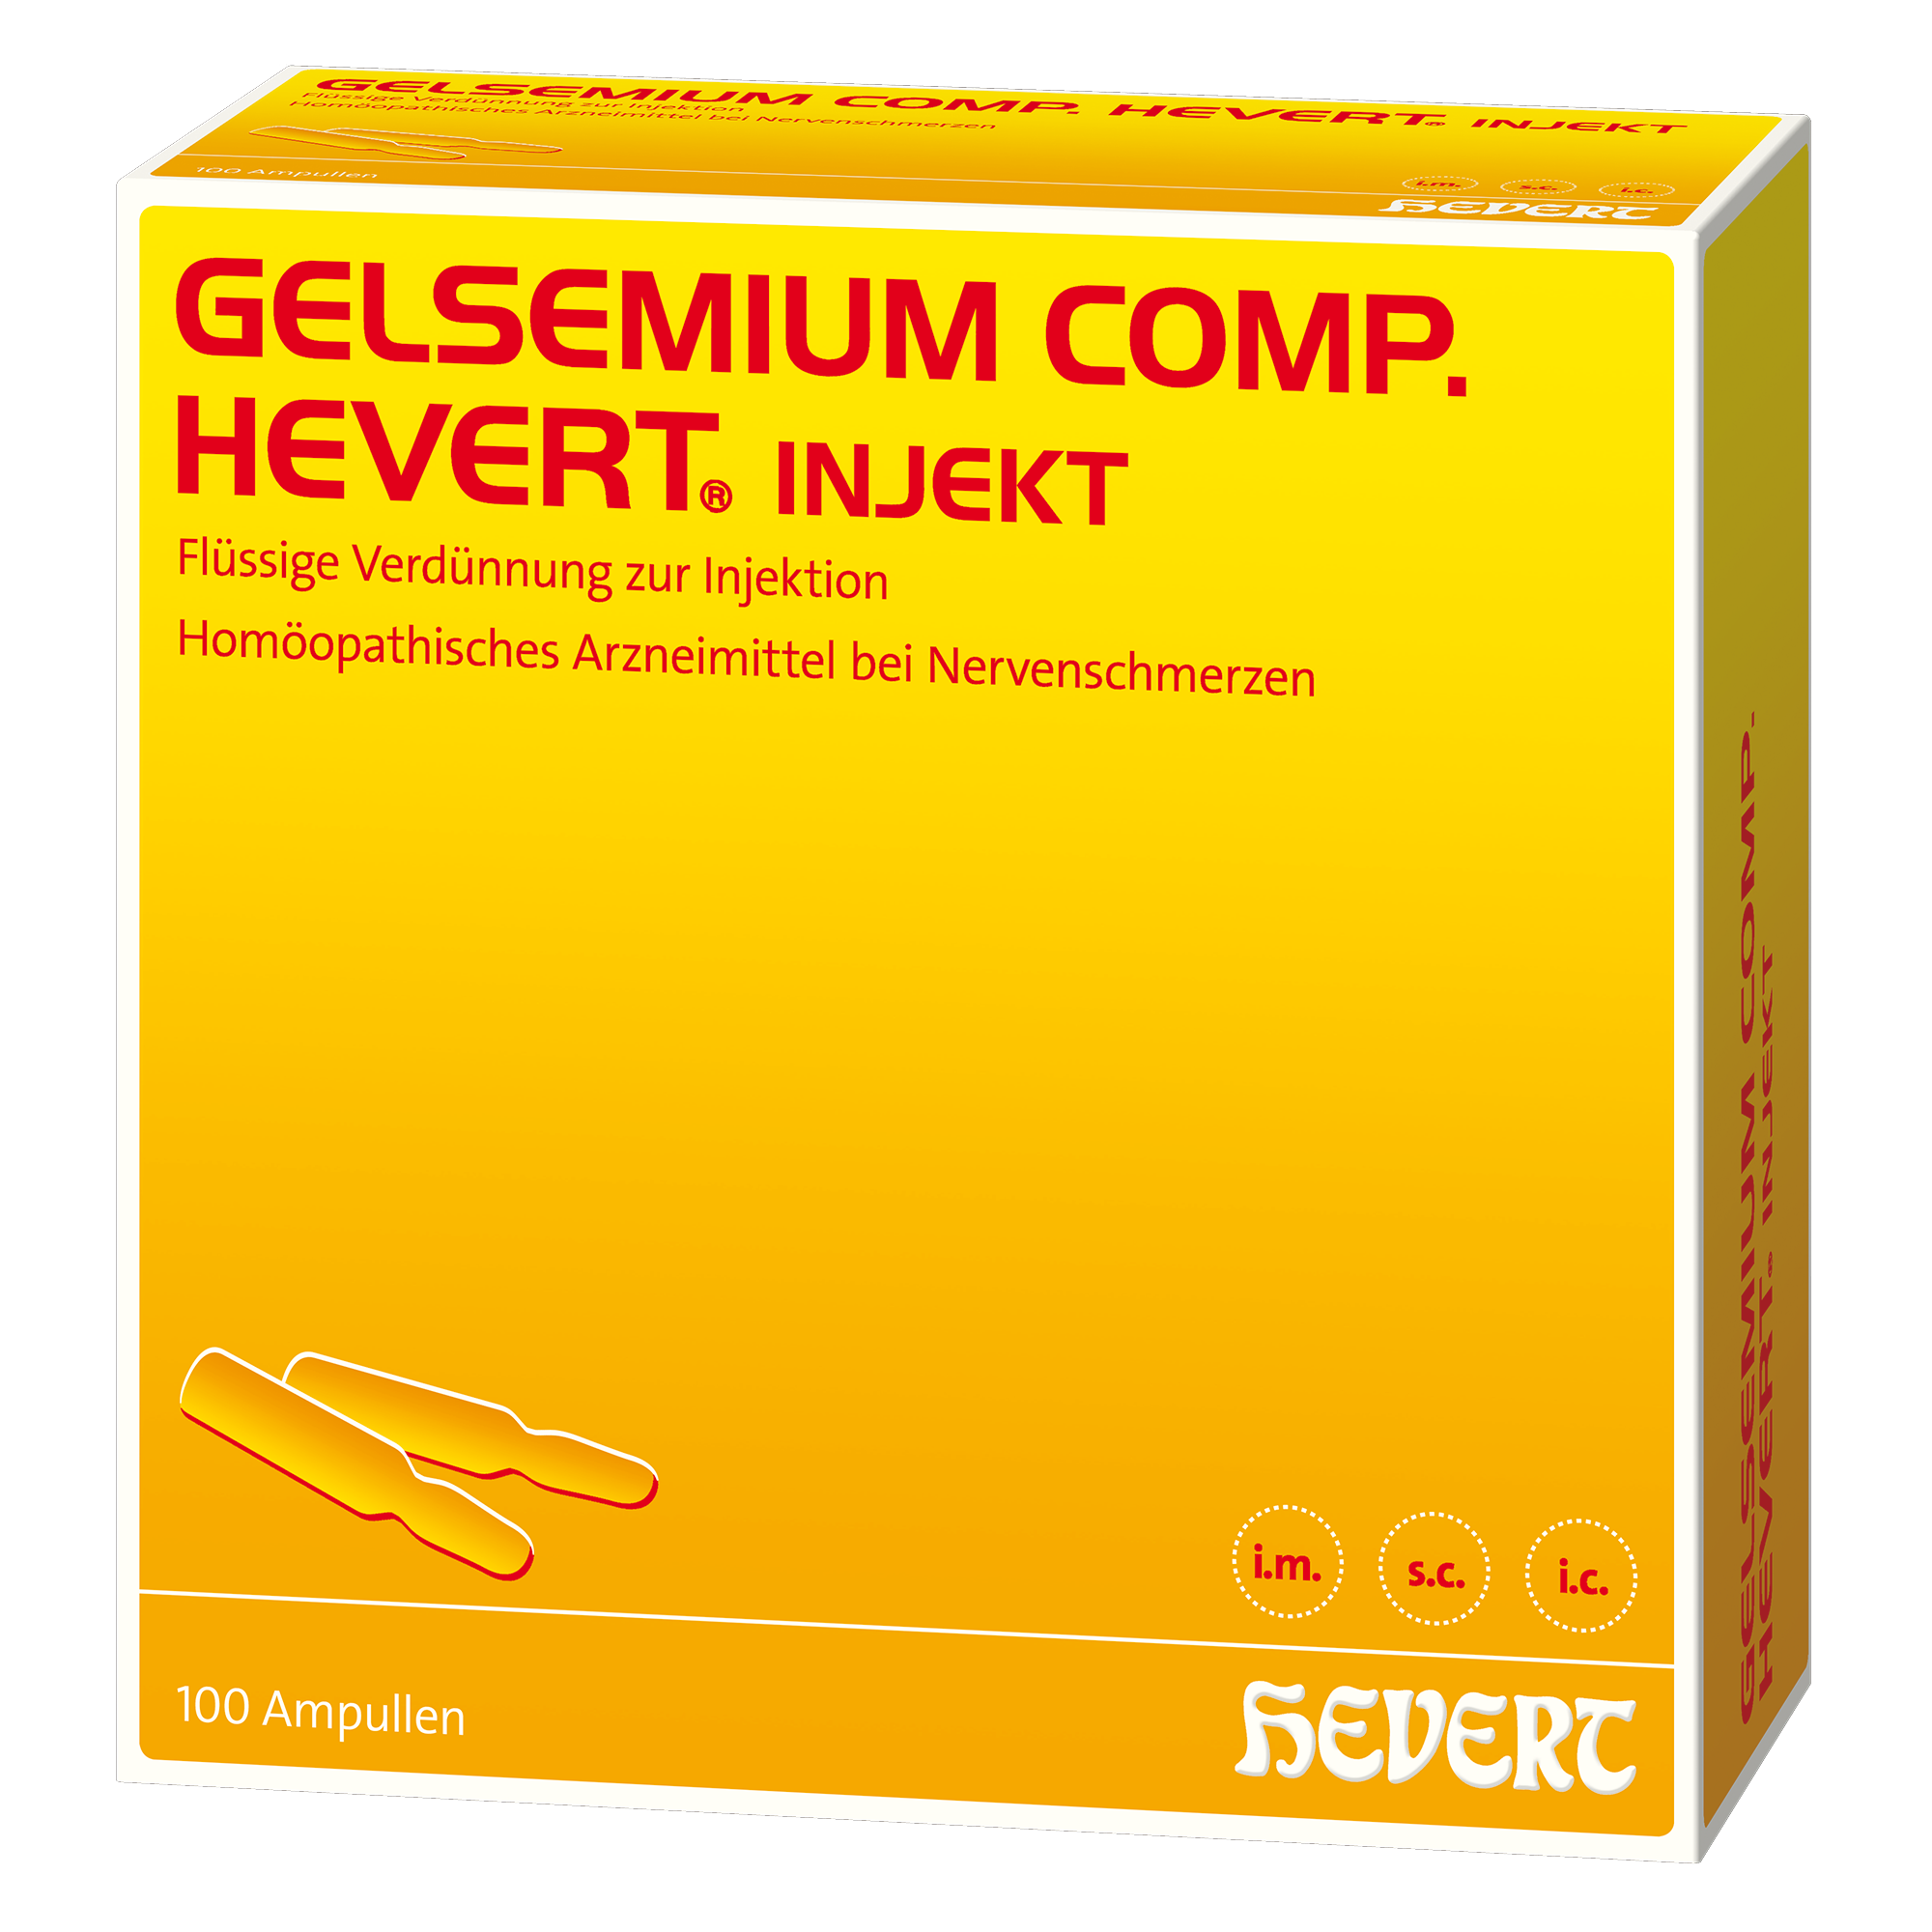 Gelsemium comp. Hevert injekt